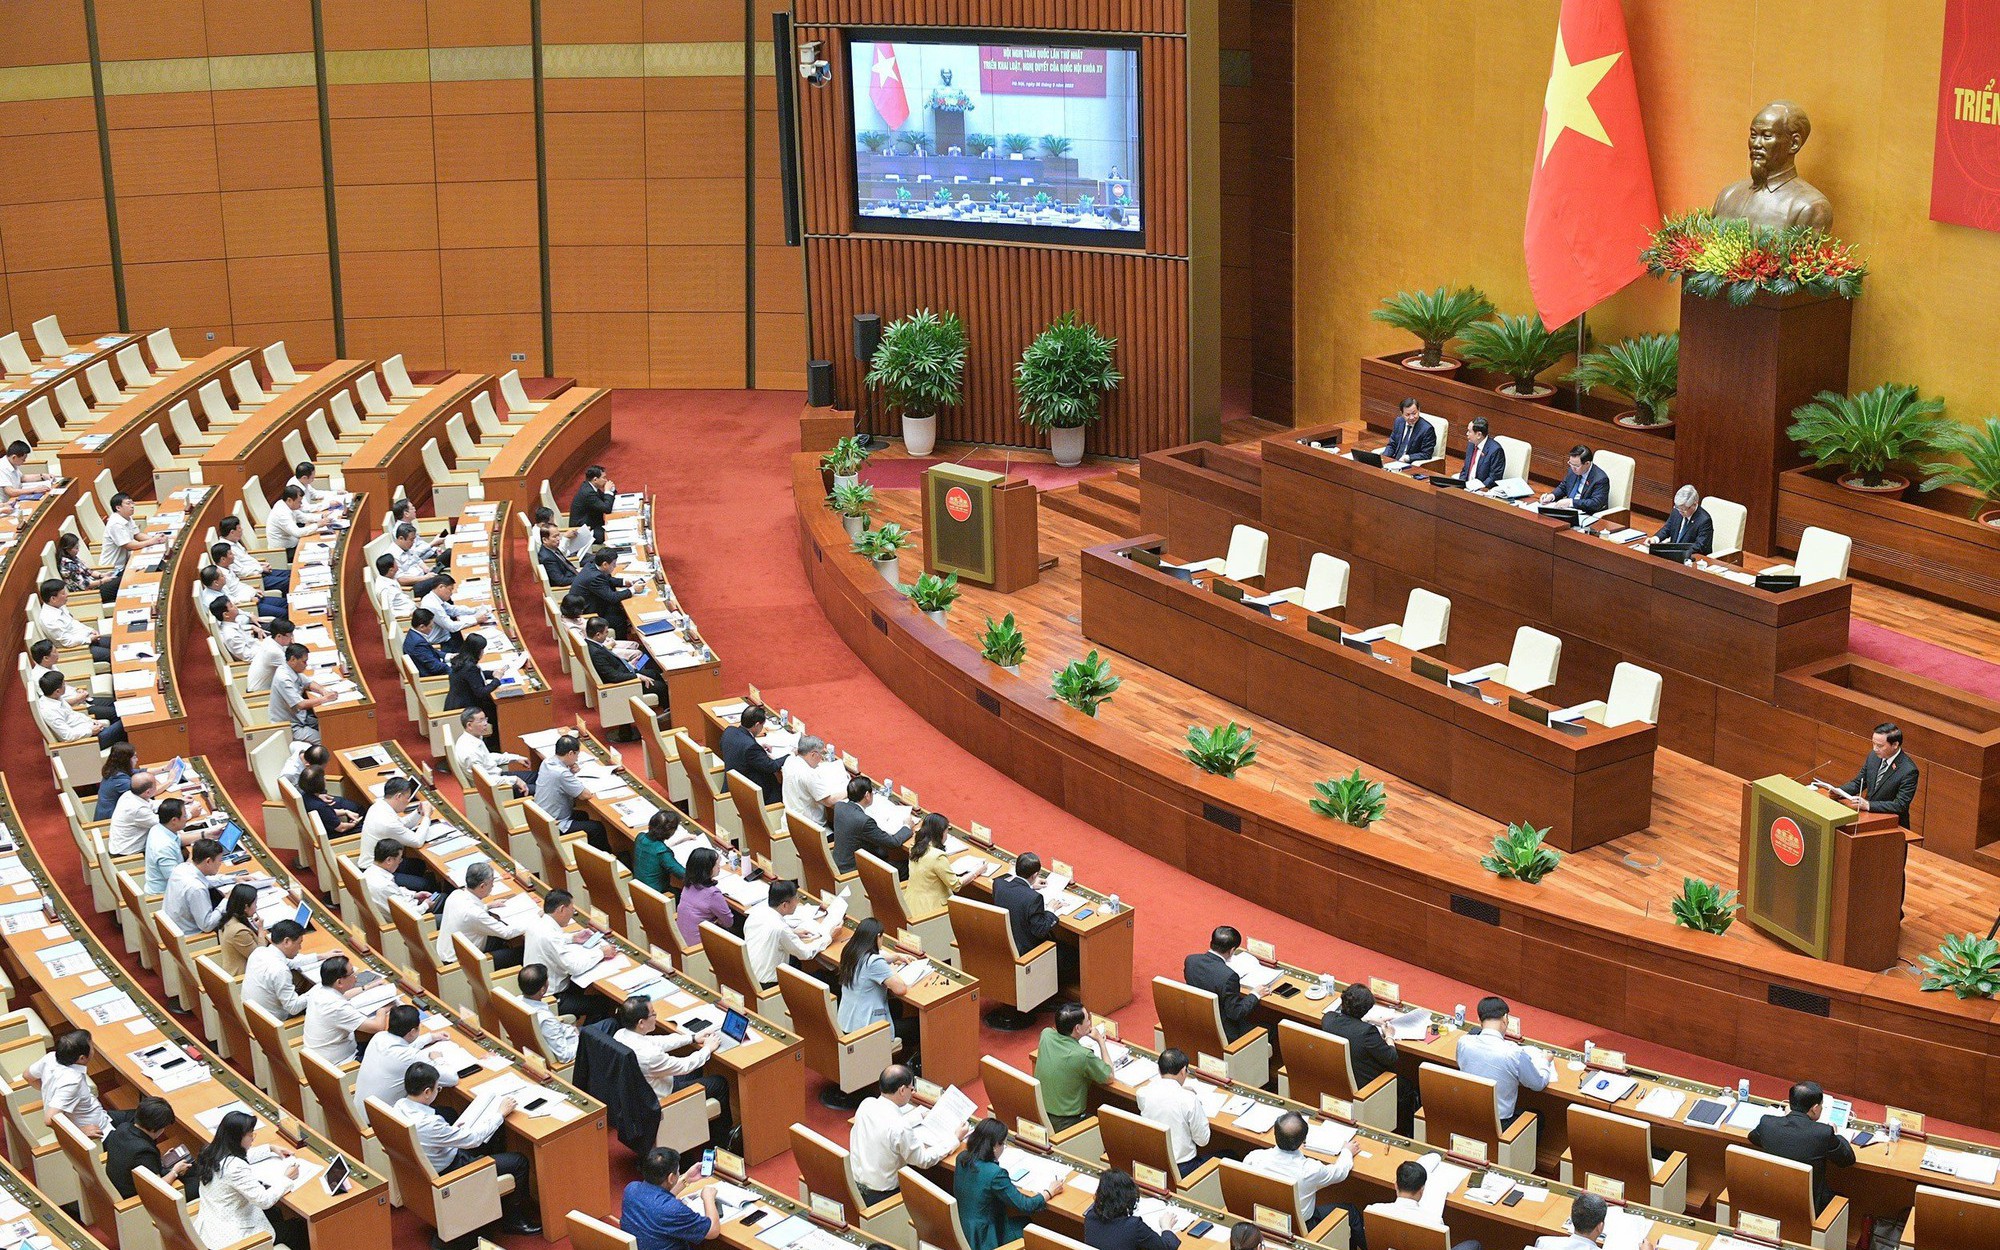 Hội nghị toàn quốc đánh giá về công tác triển khai 52 luật, nghị quyết của Quốc hội khóa XV